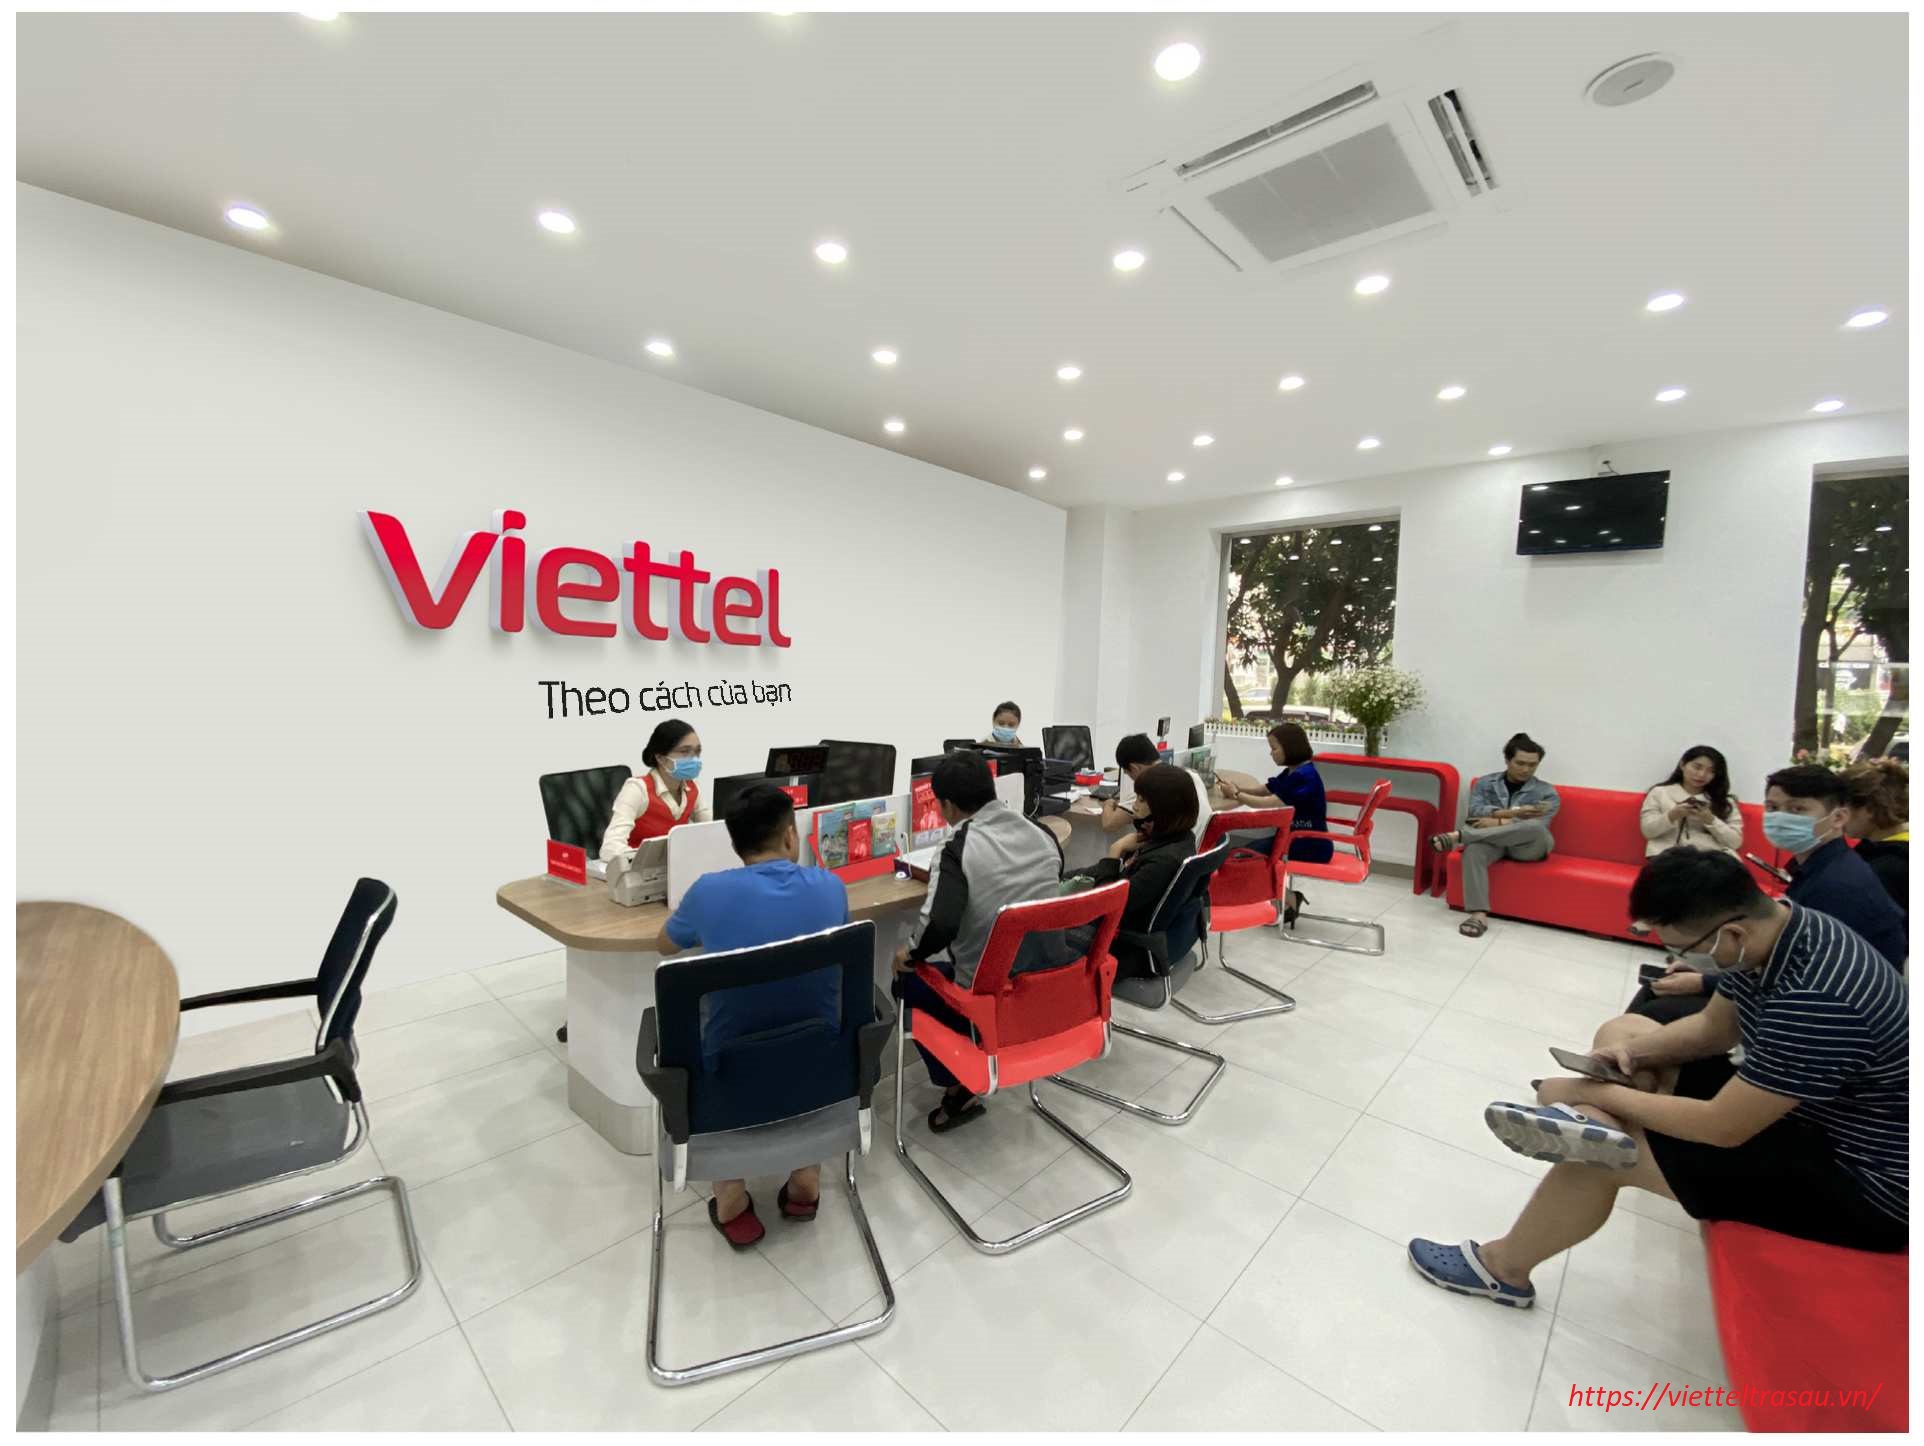 Quý khách có thể đăng ký gói cước mới tại văn phòng giao dịch Viettel gần nhất